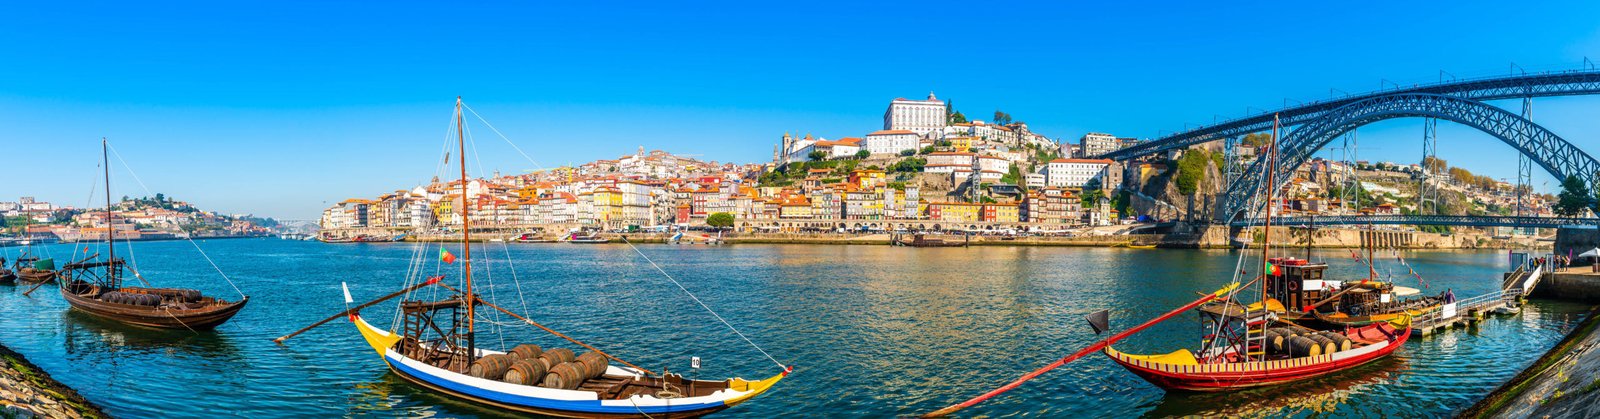 AdobeStock_296896788-1-scaled Razões para investir  em Portugal